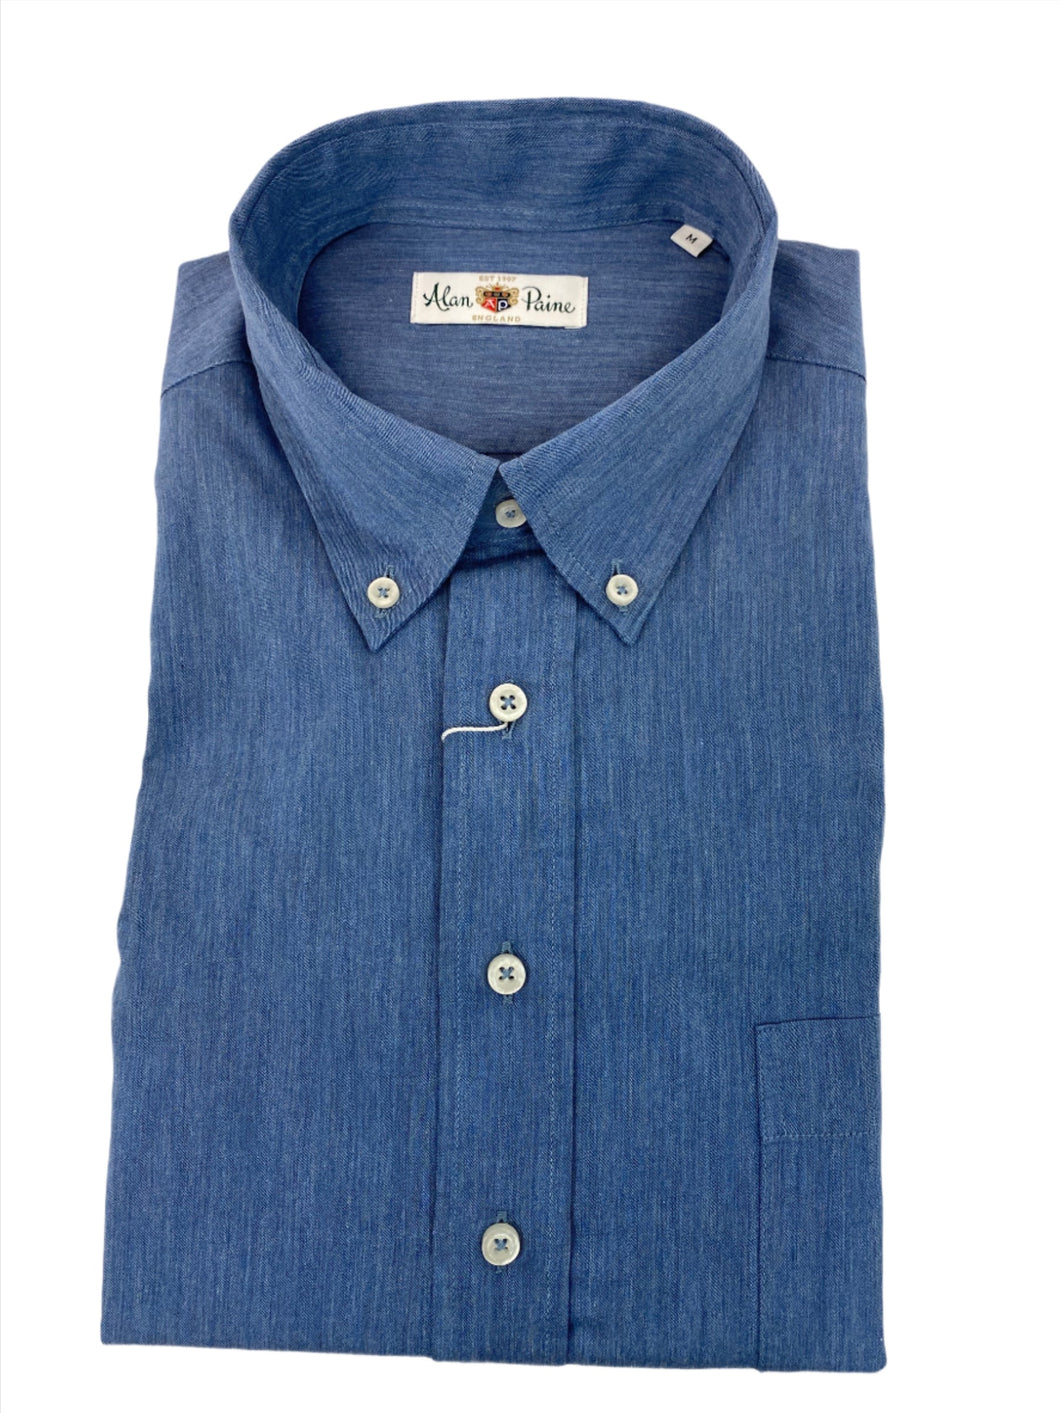 Alan Paine Fleetwood Classic BD Cotton Shirt Denim Blue